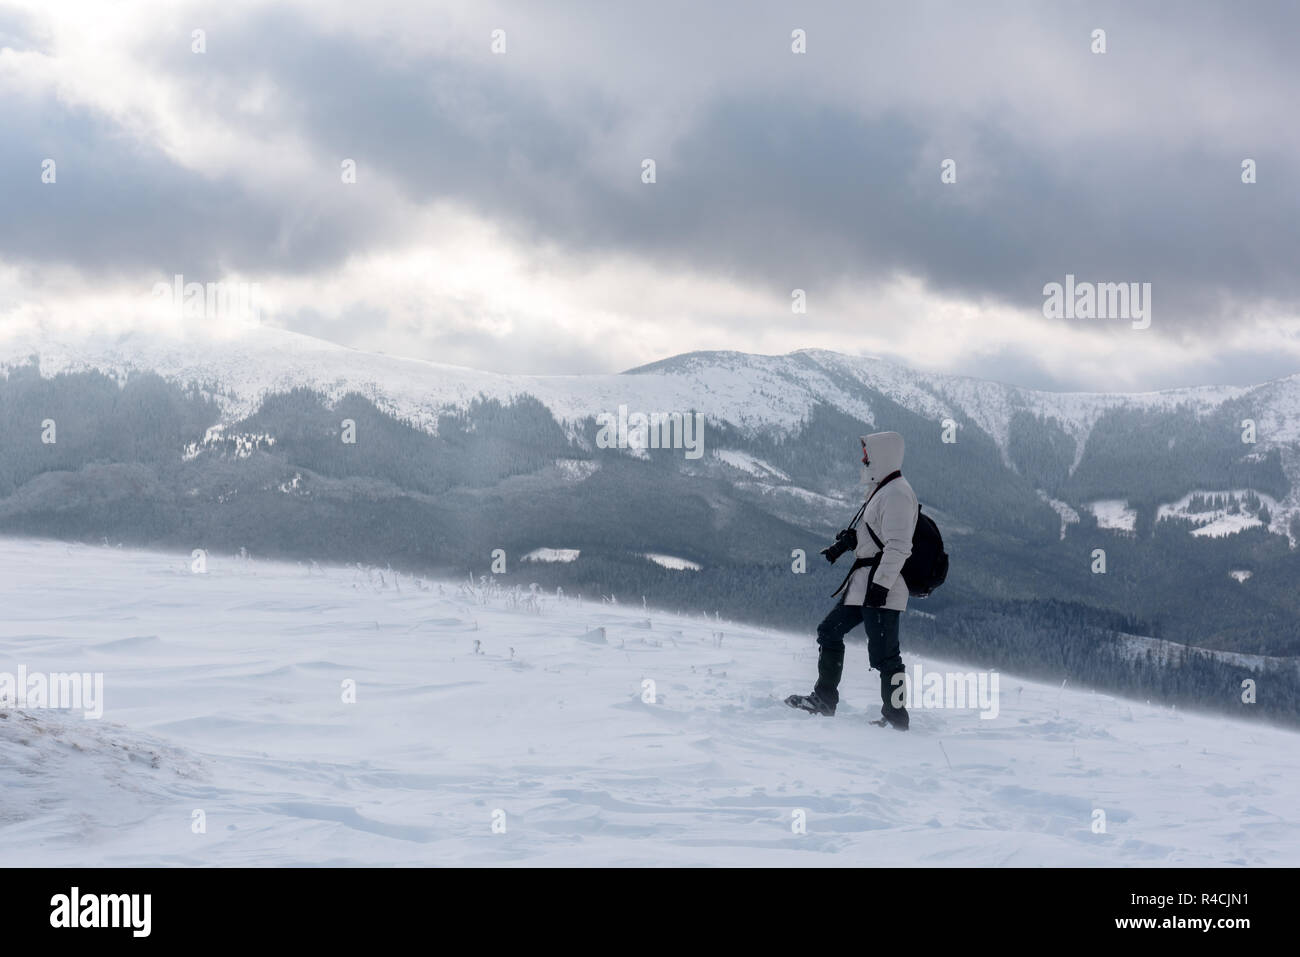 Fotografo da solo sulla cima della montagna nella tempesta di neve con uno zaino in inverno. Concetto di viaggio. Le montagne dei Carpazi. Fotografia di paesaggi Foto Stock